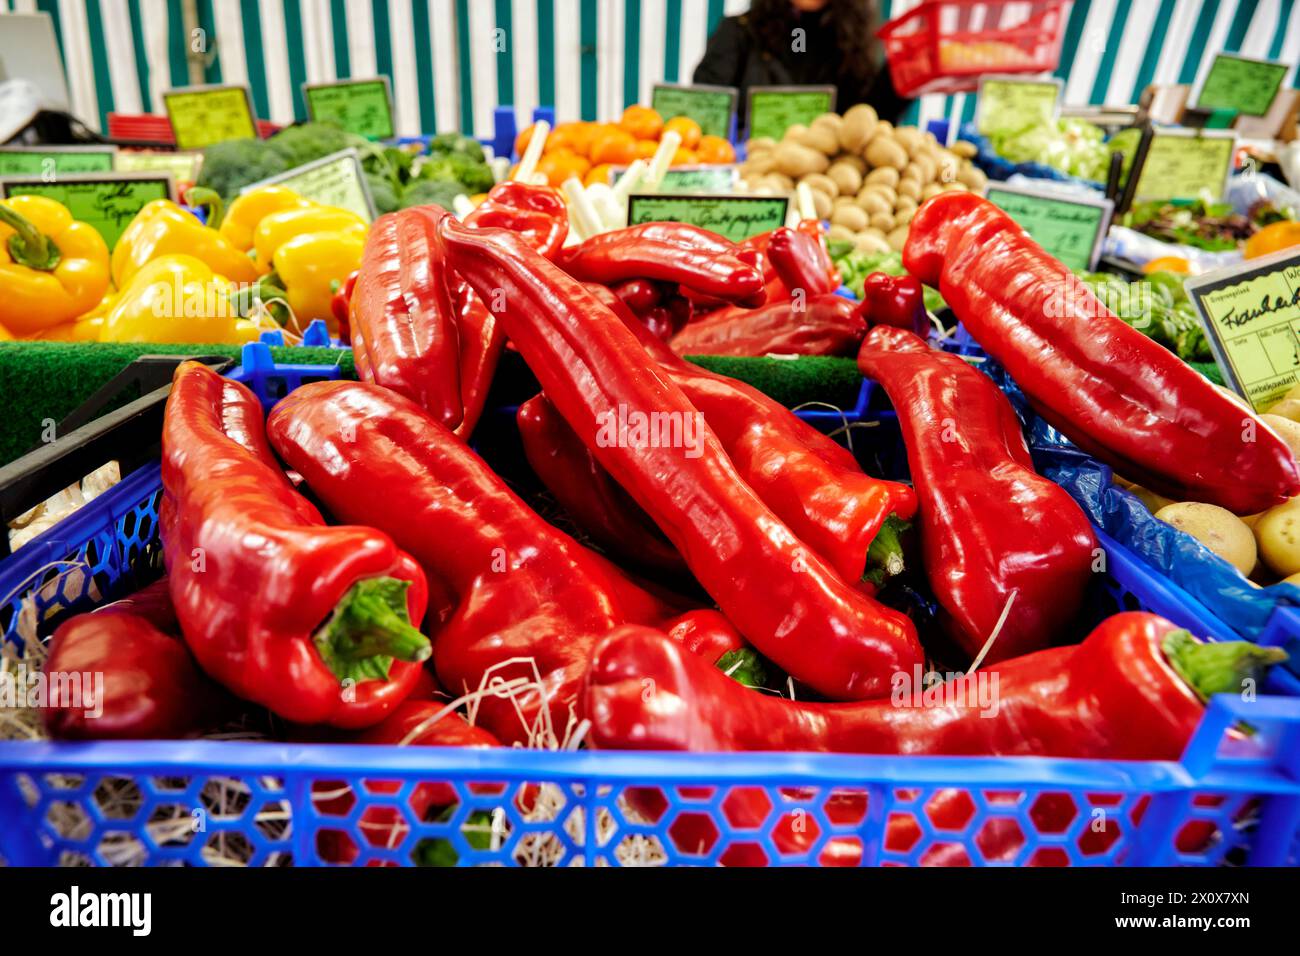 Reichhaltige Obst- und Gemüseauswahl an einem Marktstand. Banque D'Images